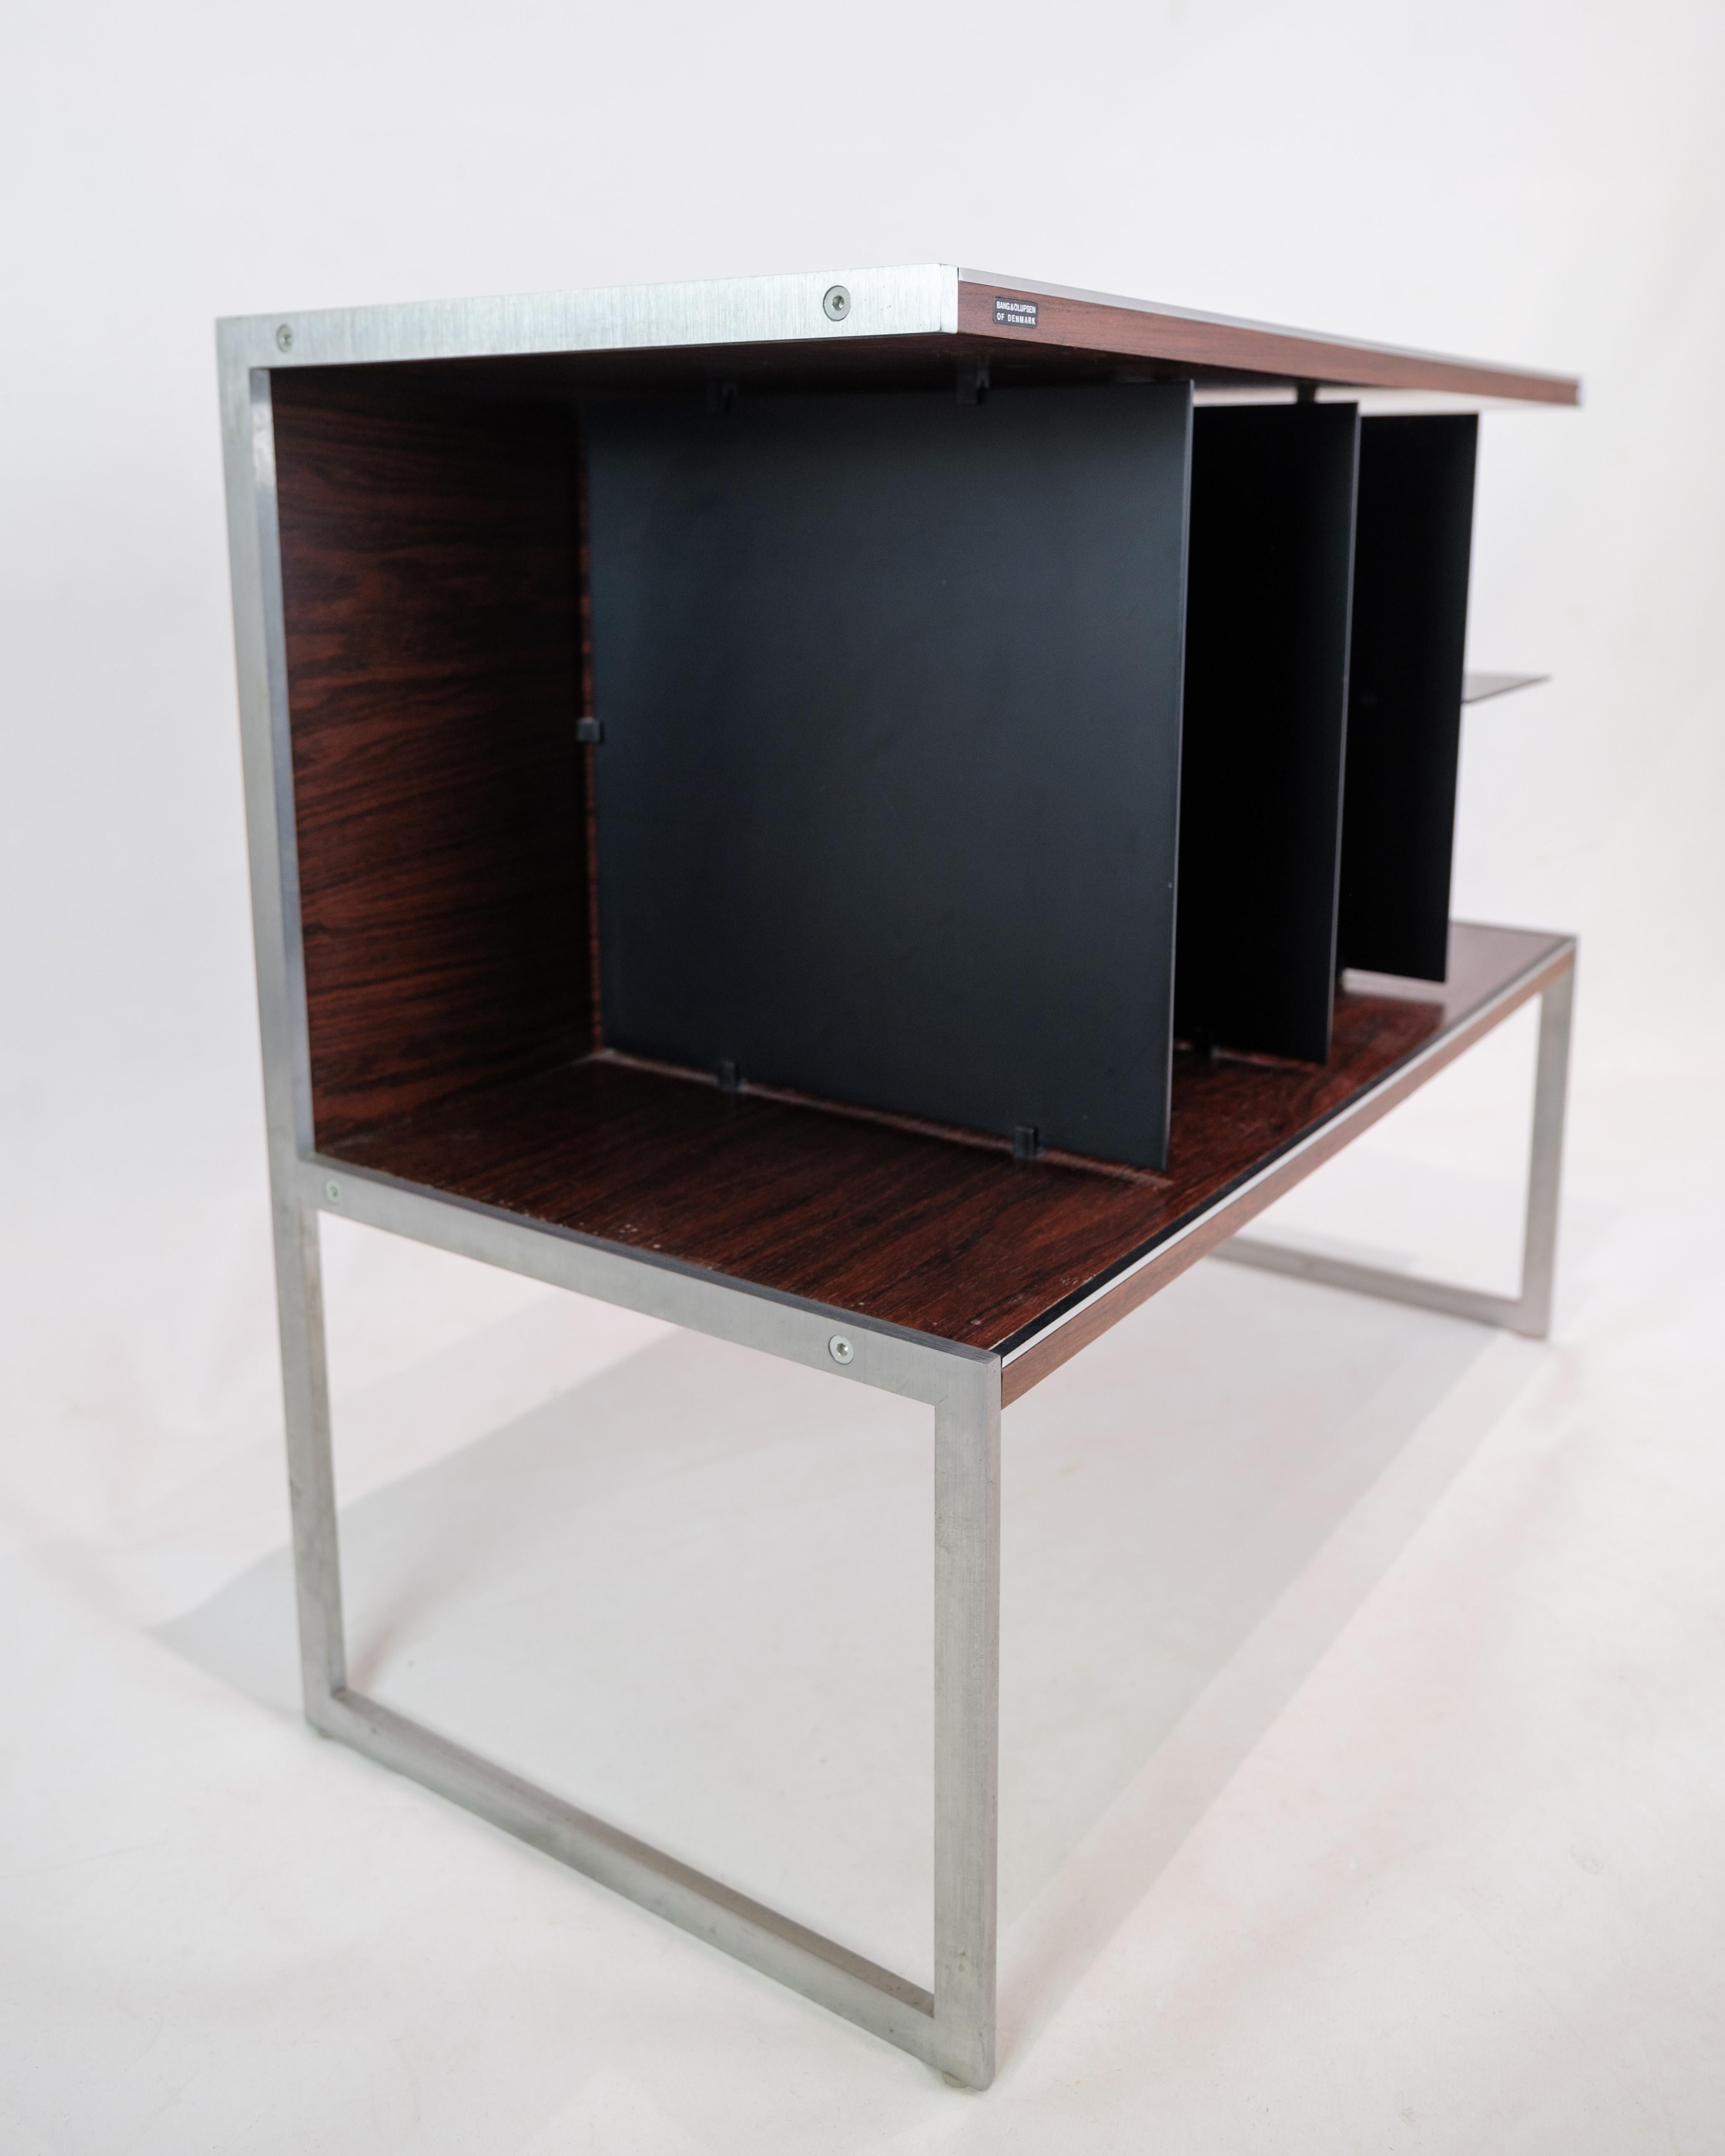 Ce meuble TV ou table d'appoint, conçu par Jacob Jensen en collaboration avec Bang & Olufsen, est un splendide exemple de l'esthétique moderne et de la fonctionnalité des années 1970. Fabriqué en bois de rose et en aluminium, ce meuble dégage un